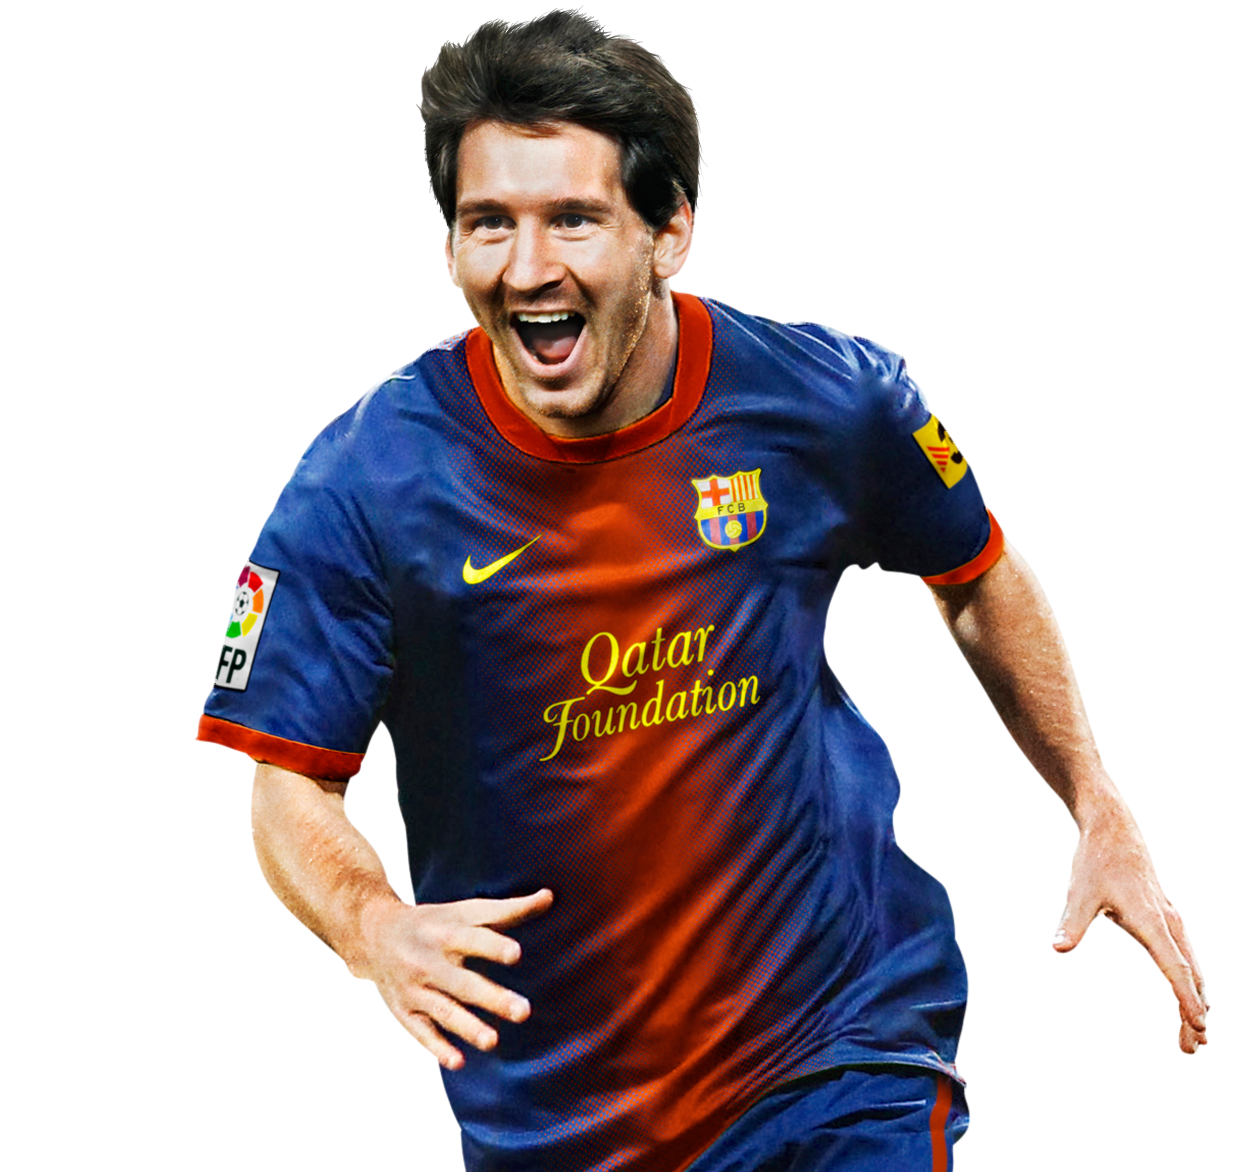 Designer de Boleiro: Lionel Messi - Barcelona / Argentina / Roupa Paisana